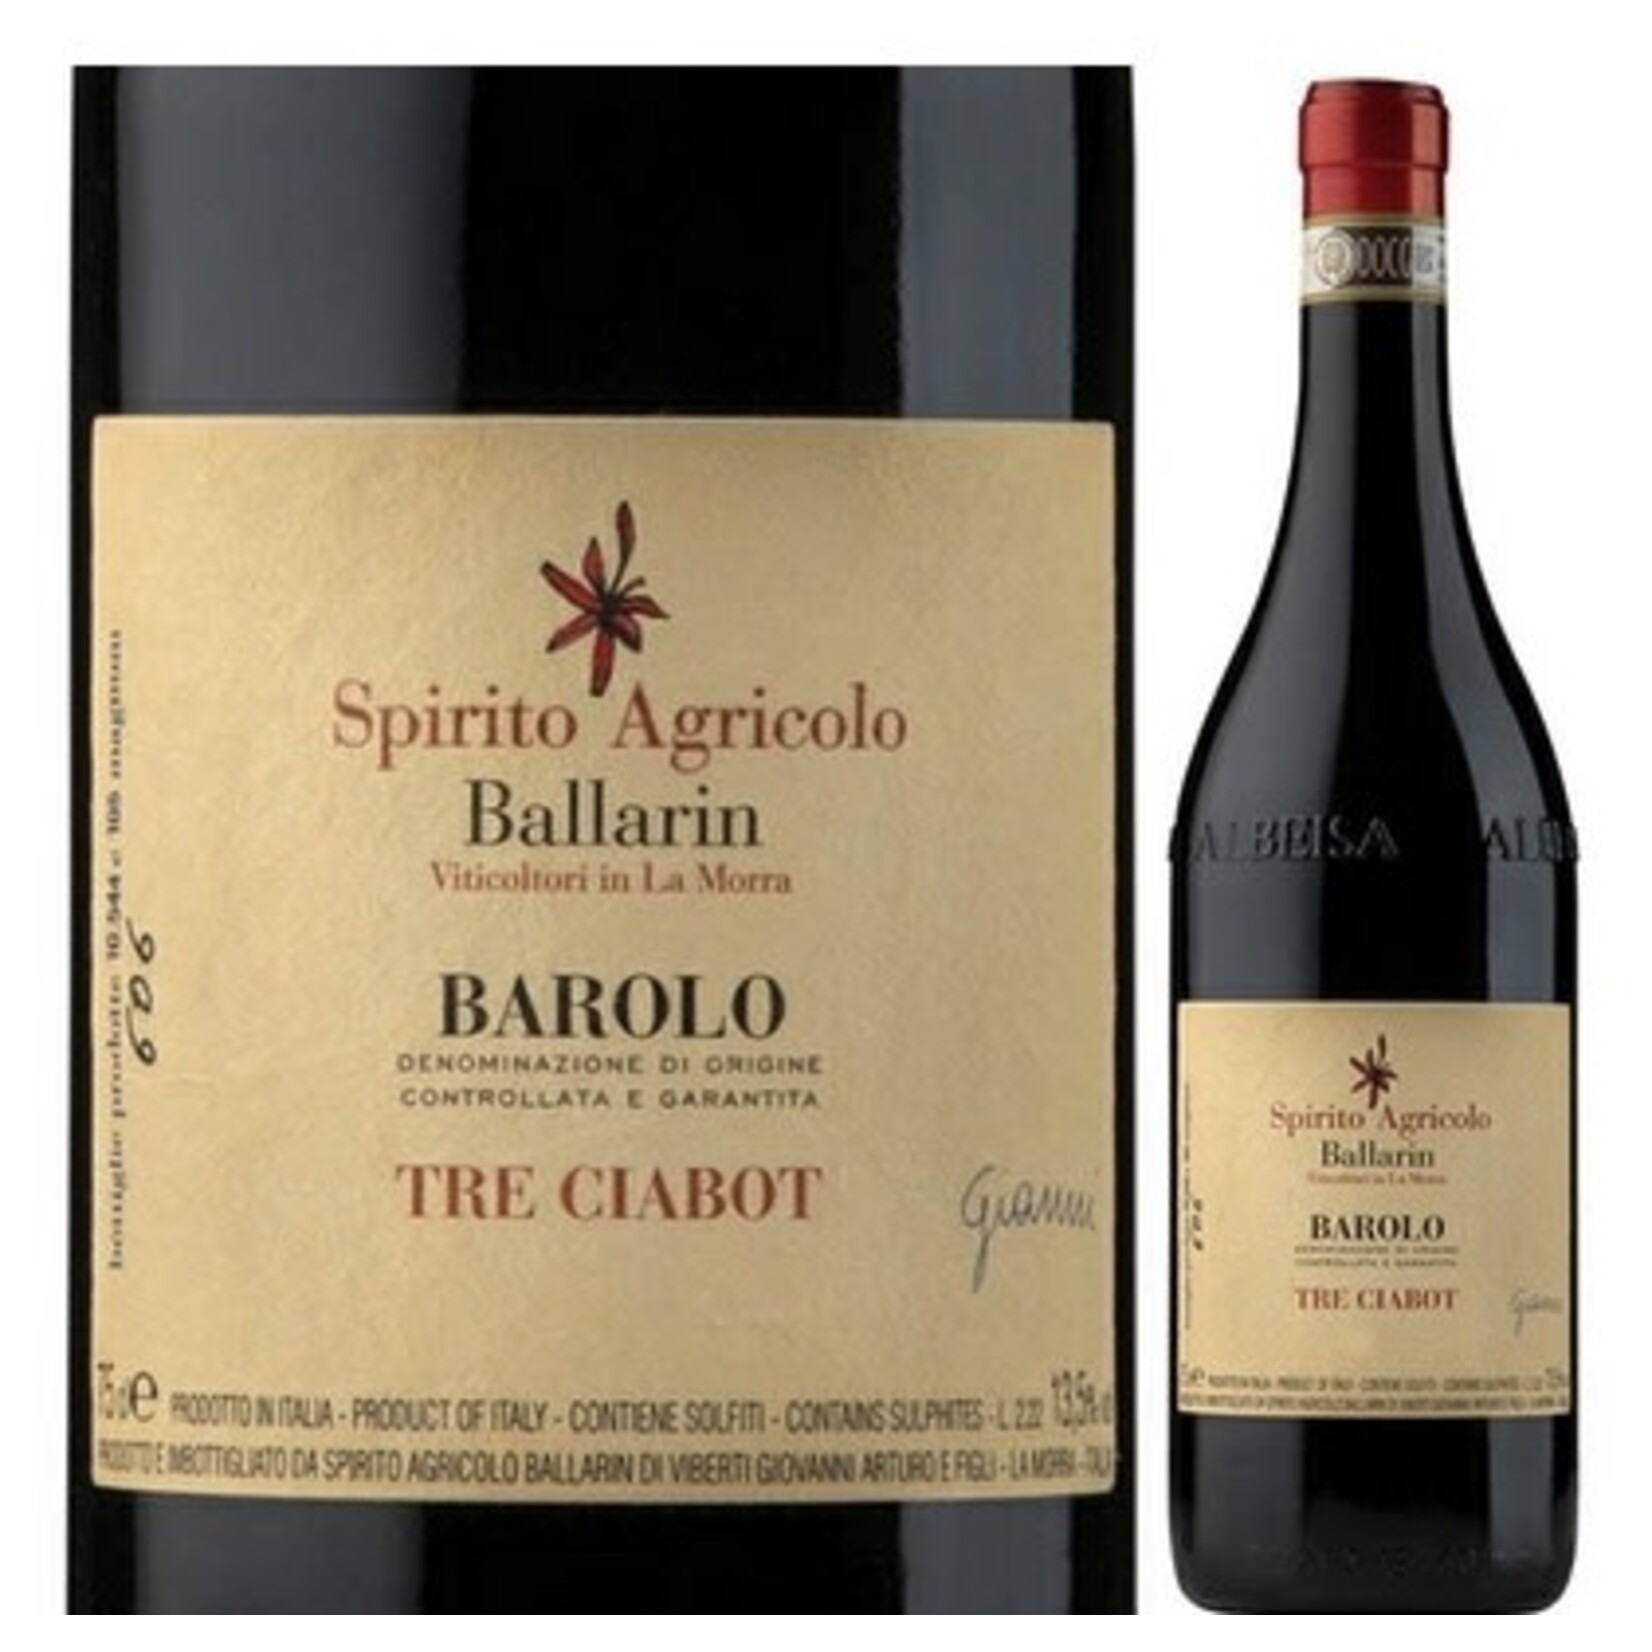 Wine Spirito Agricolo Ballarin Barolo Tre Ciabot 2019